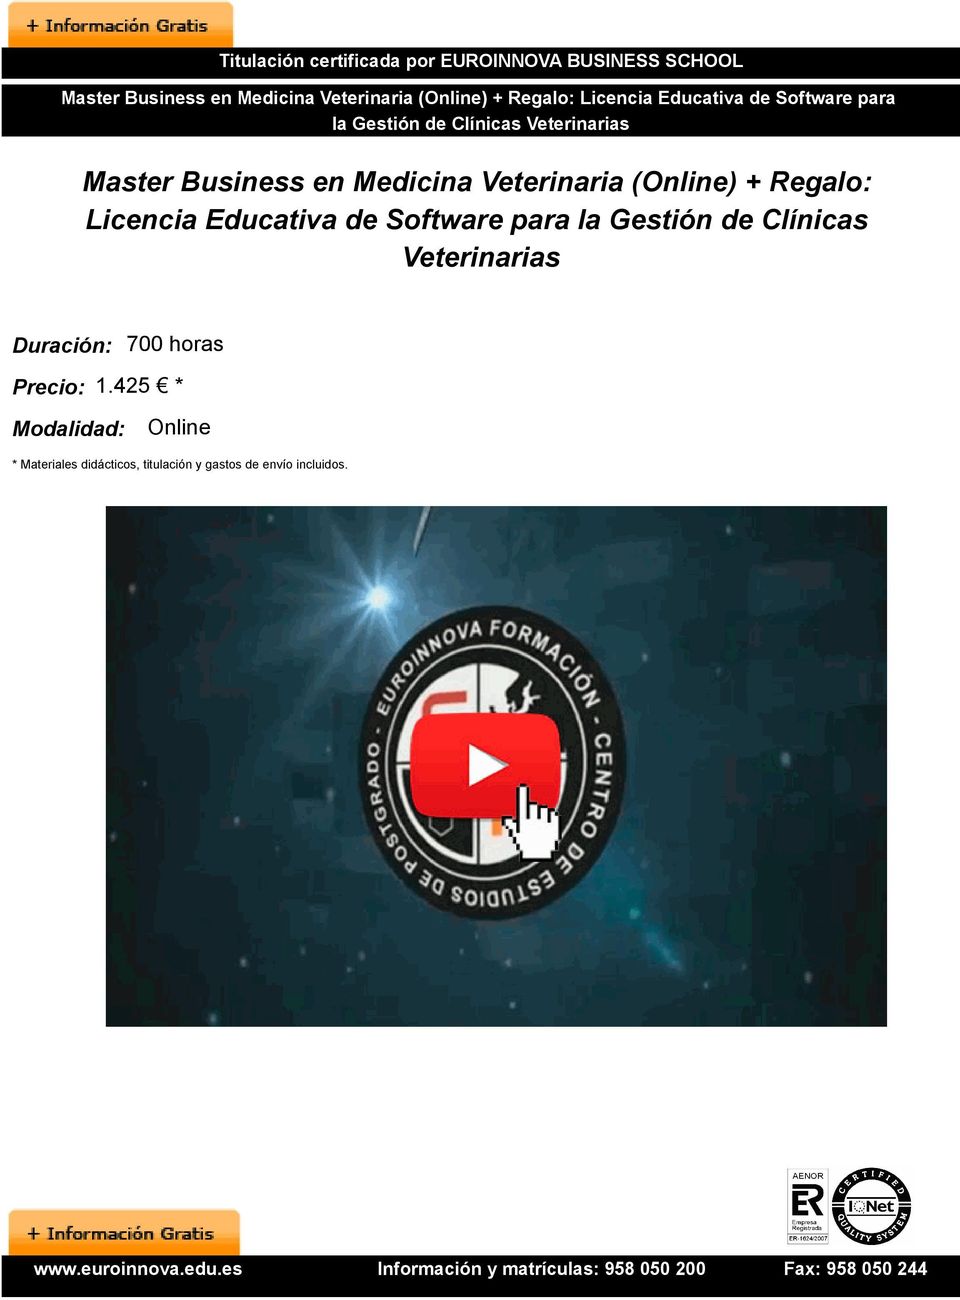 (Online) + Regalo: Licencia Educativa de Software para la Gestión de Clínicas Veterinarias